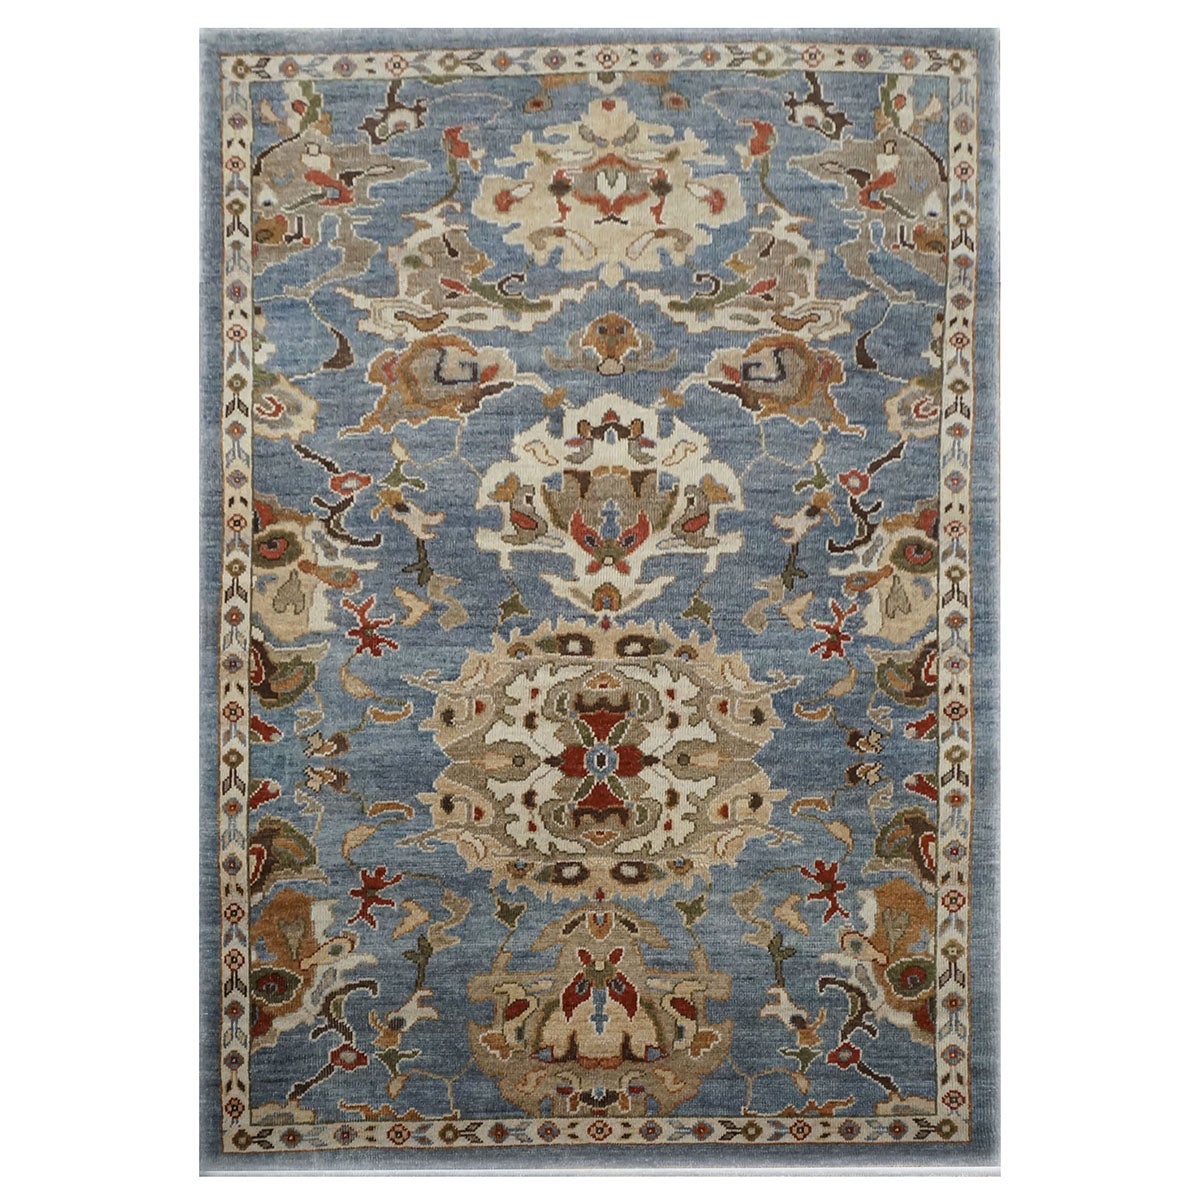 21. Jahrhundert Sultanabad 4x6 Schieferblau, Elfenbein, & Tan Handgefertigter Bereich Teppich